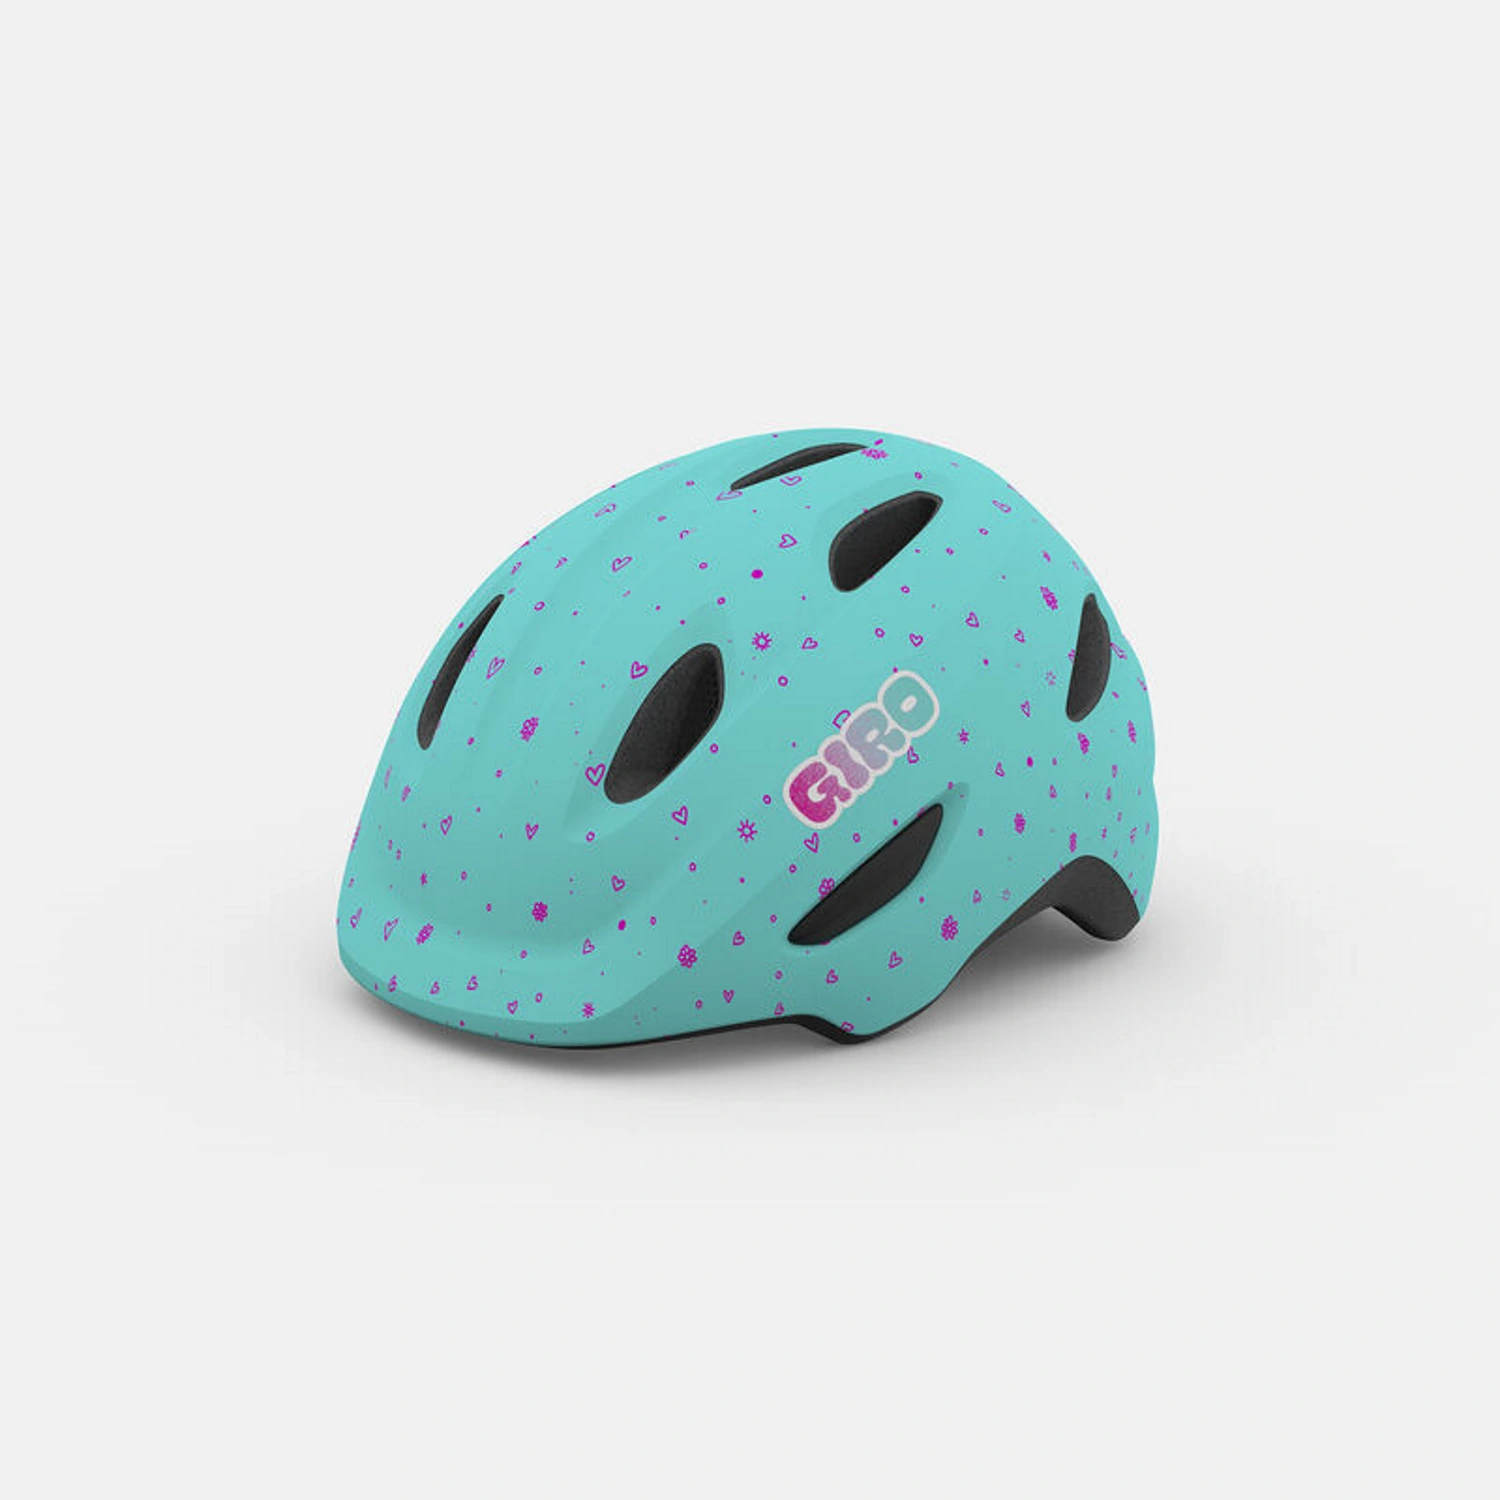 Miętowy kask rowerowy dziecięcy Giro z wzorem w kształcie serc i czarne wentylacyjne otwory